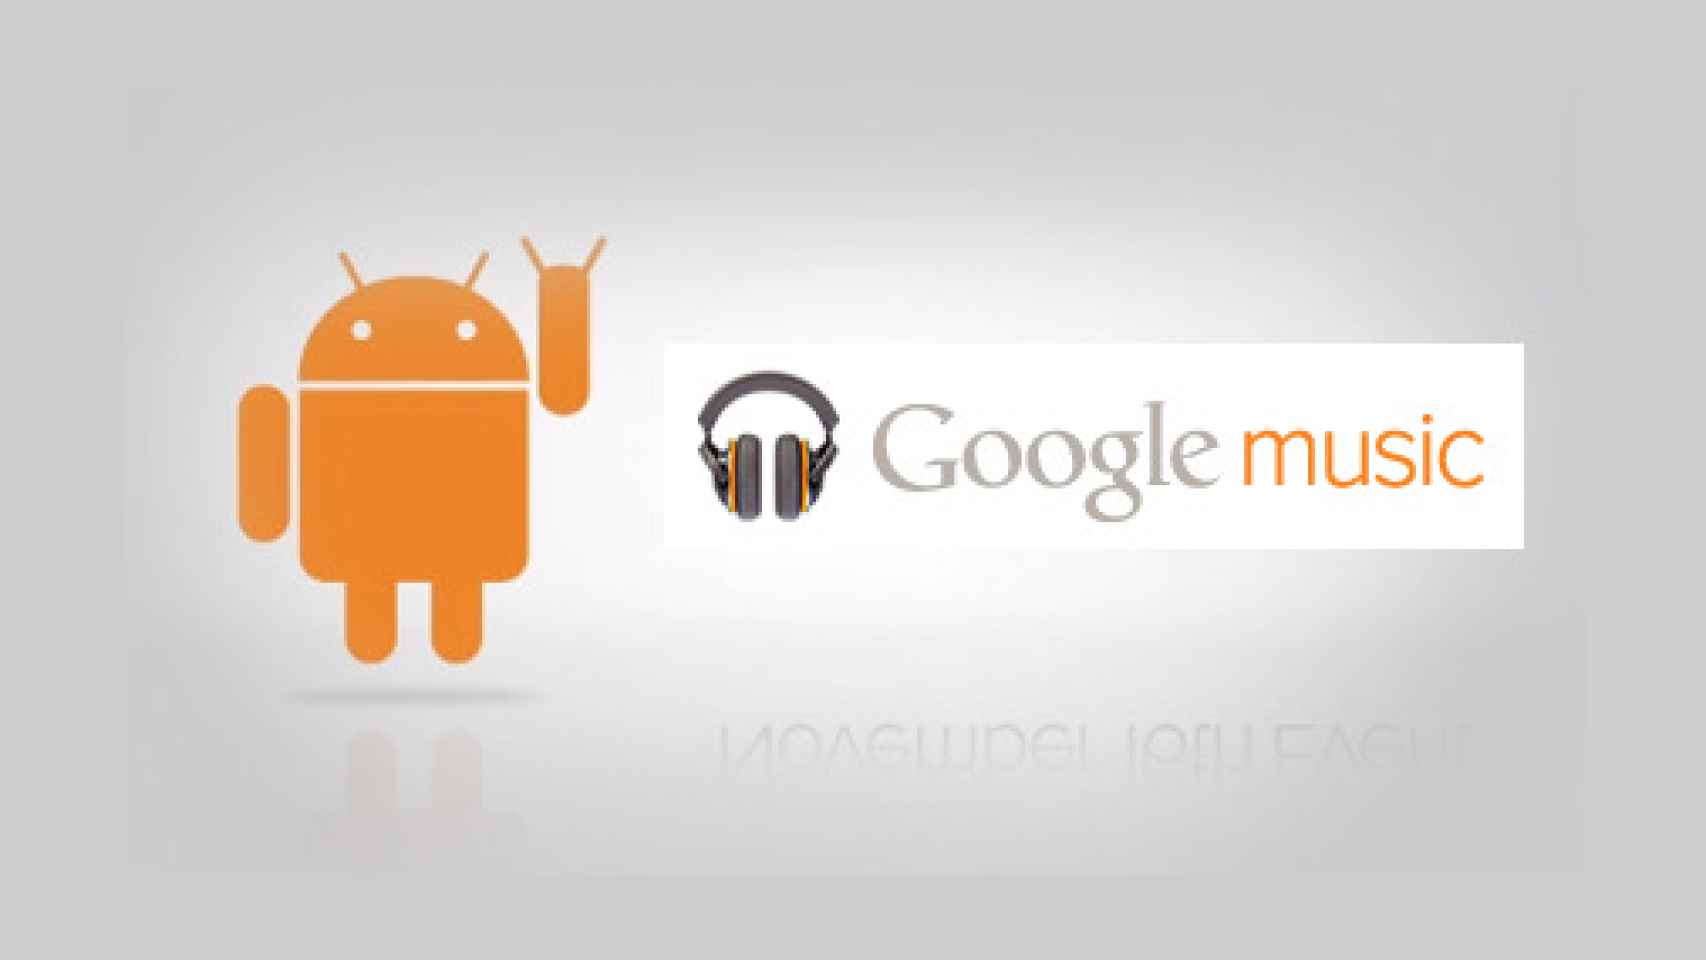 Google Music, la tienda de canciones, el sello discográfico y el futuro de la música